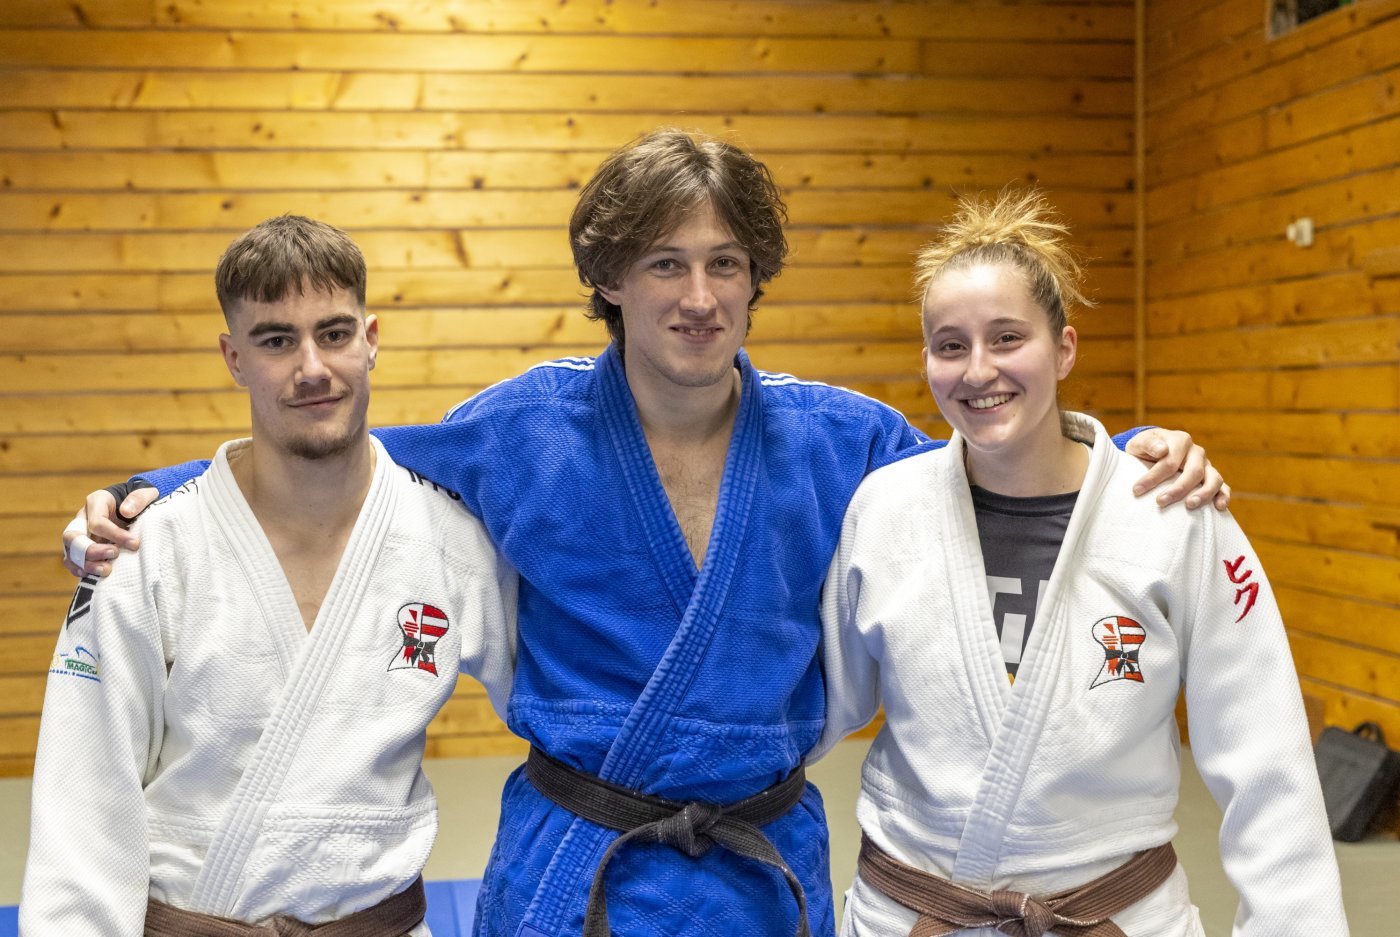 Judo-Club Delémont, le 24 novembre 2023, Présentation sélectionnés Judo Jura, de gauche à droite : Eliot Domont, Pierrik Jordan, Lara Bigler, photo Yann Béguelin